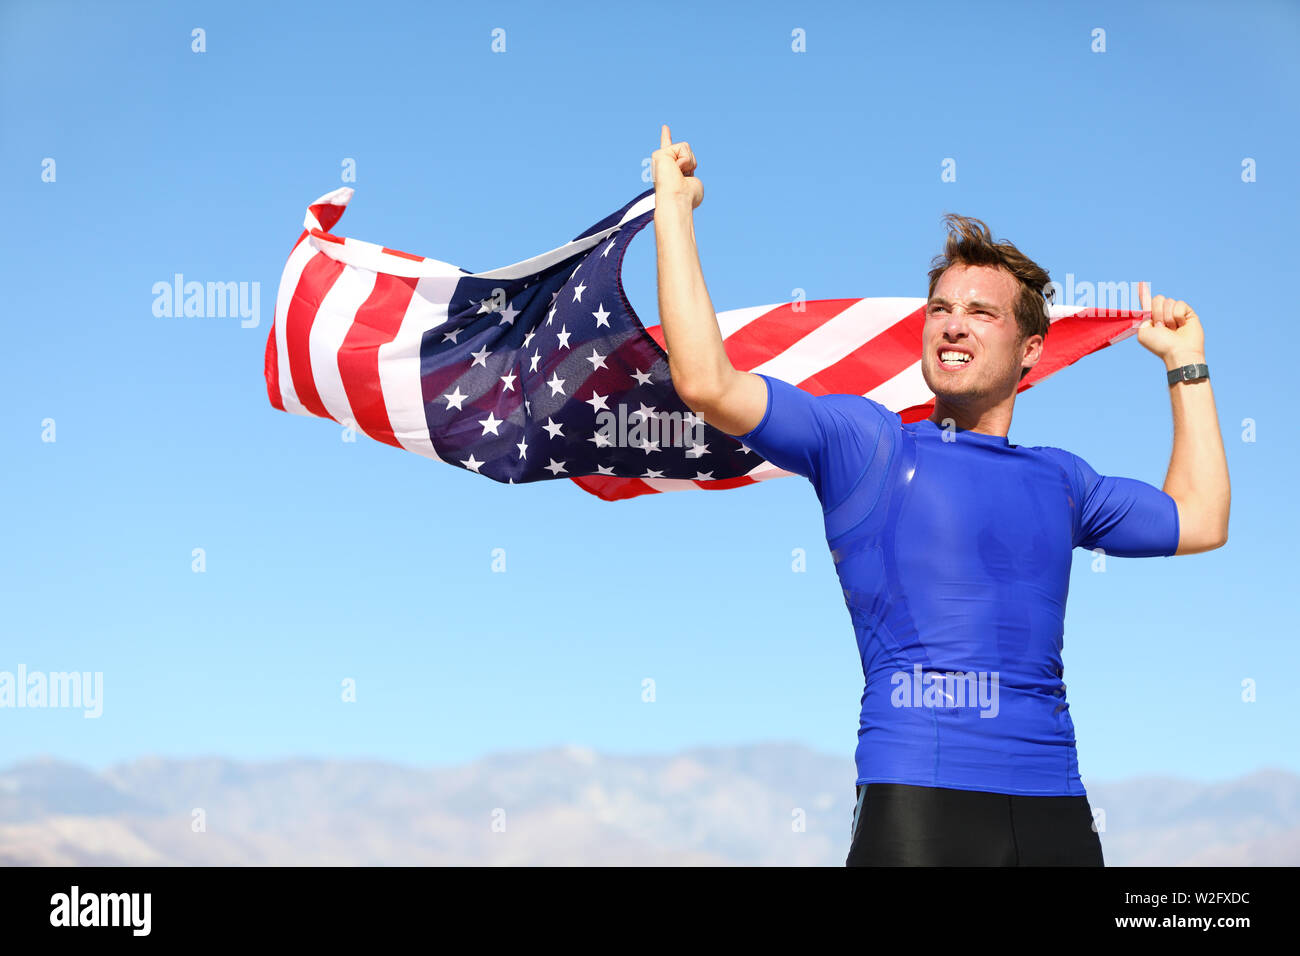 Athleten zujubeln Holding US Flag kompromisslos sportlichen jungen Mann, der mit der amerikanischen Flagge in die Luft hob in seinen Händen weht im Wind gegen einen klaren sonnigen blauen Himmel Stockfoto